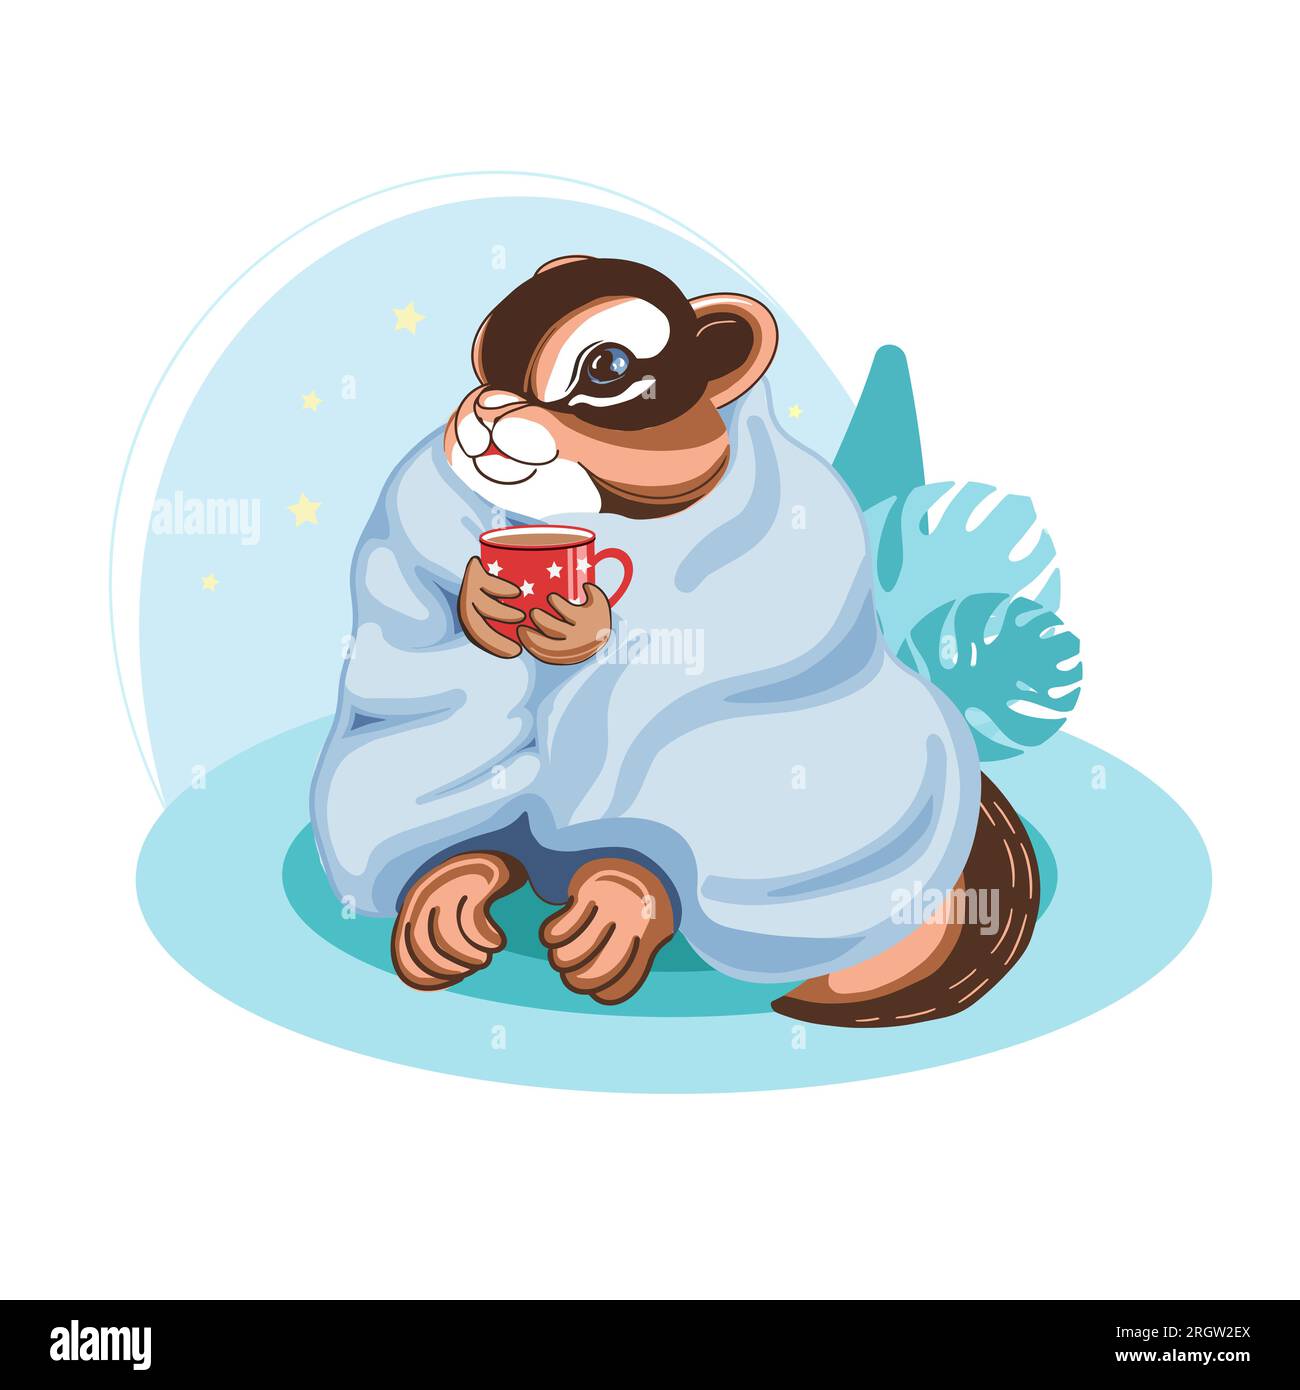 Süße kindische Illustration. Streifenhörnchen in einer Decke mit einem Becher Kakao. Abbildung in blauen Farben. Für Kinderzimmer, Poster, Aufkleber, Postkarten, Ausdrucke Stock Vektor